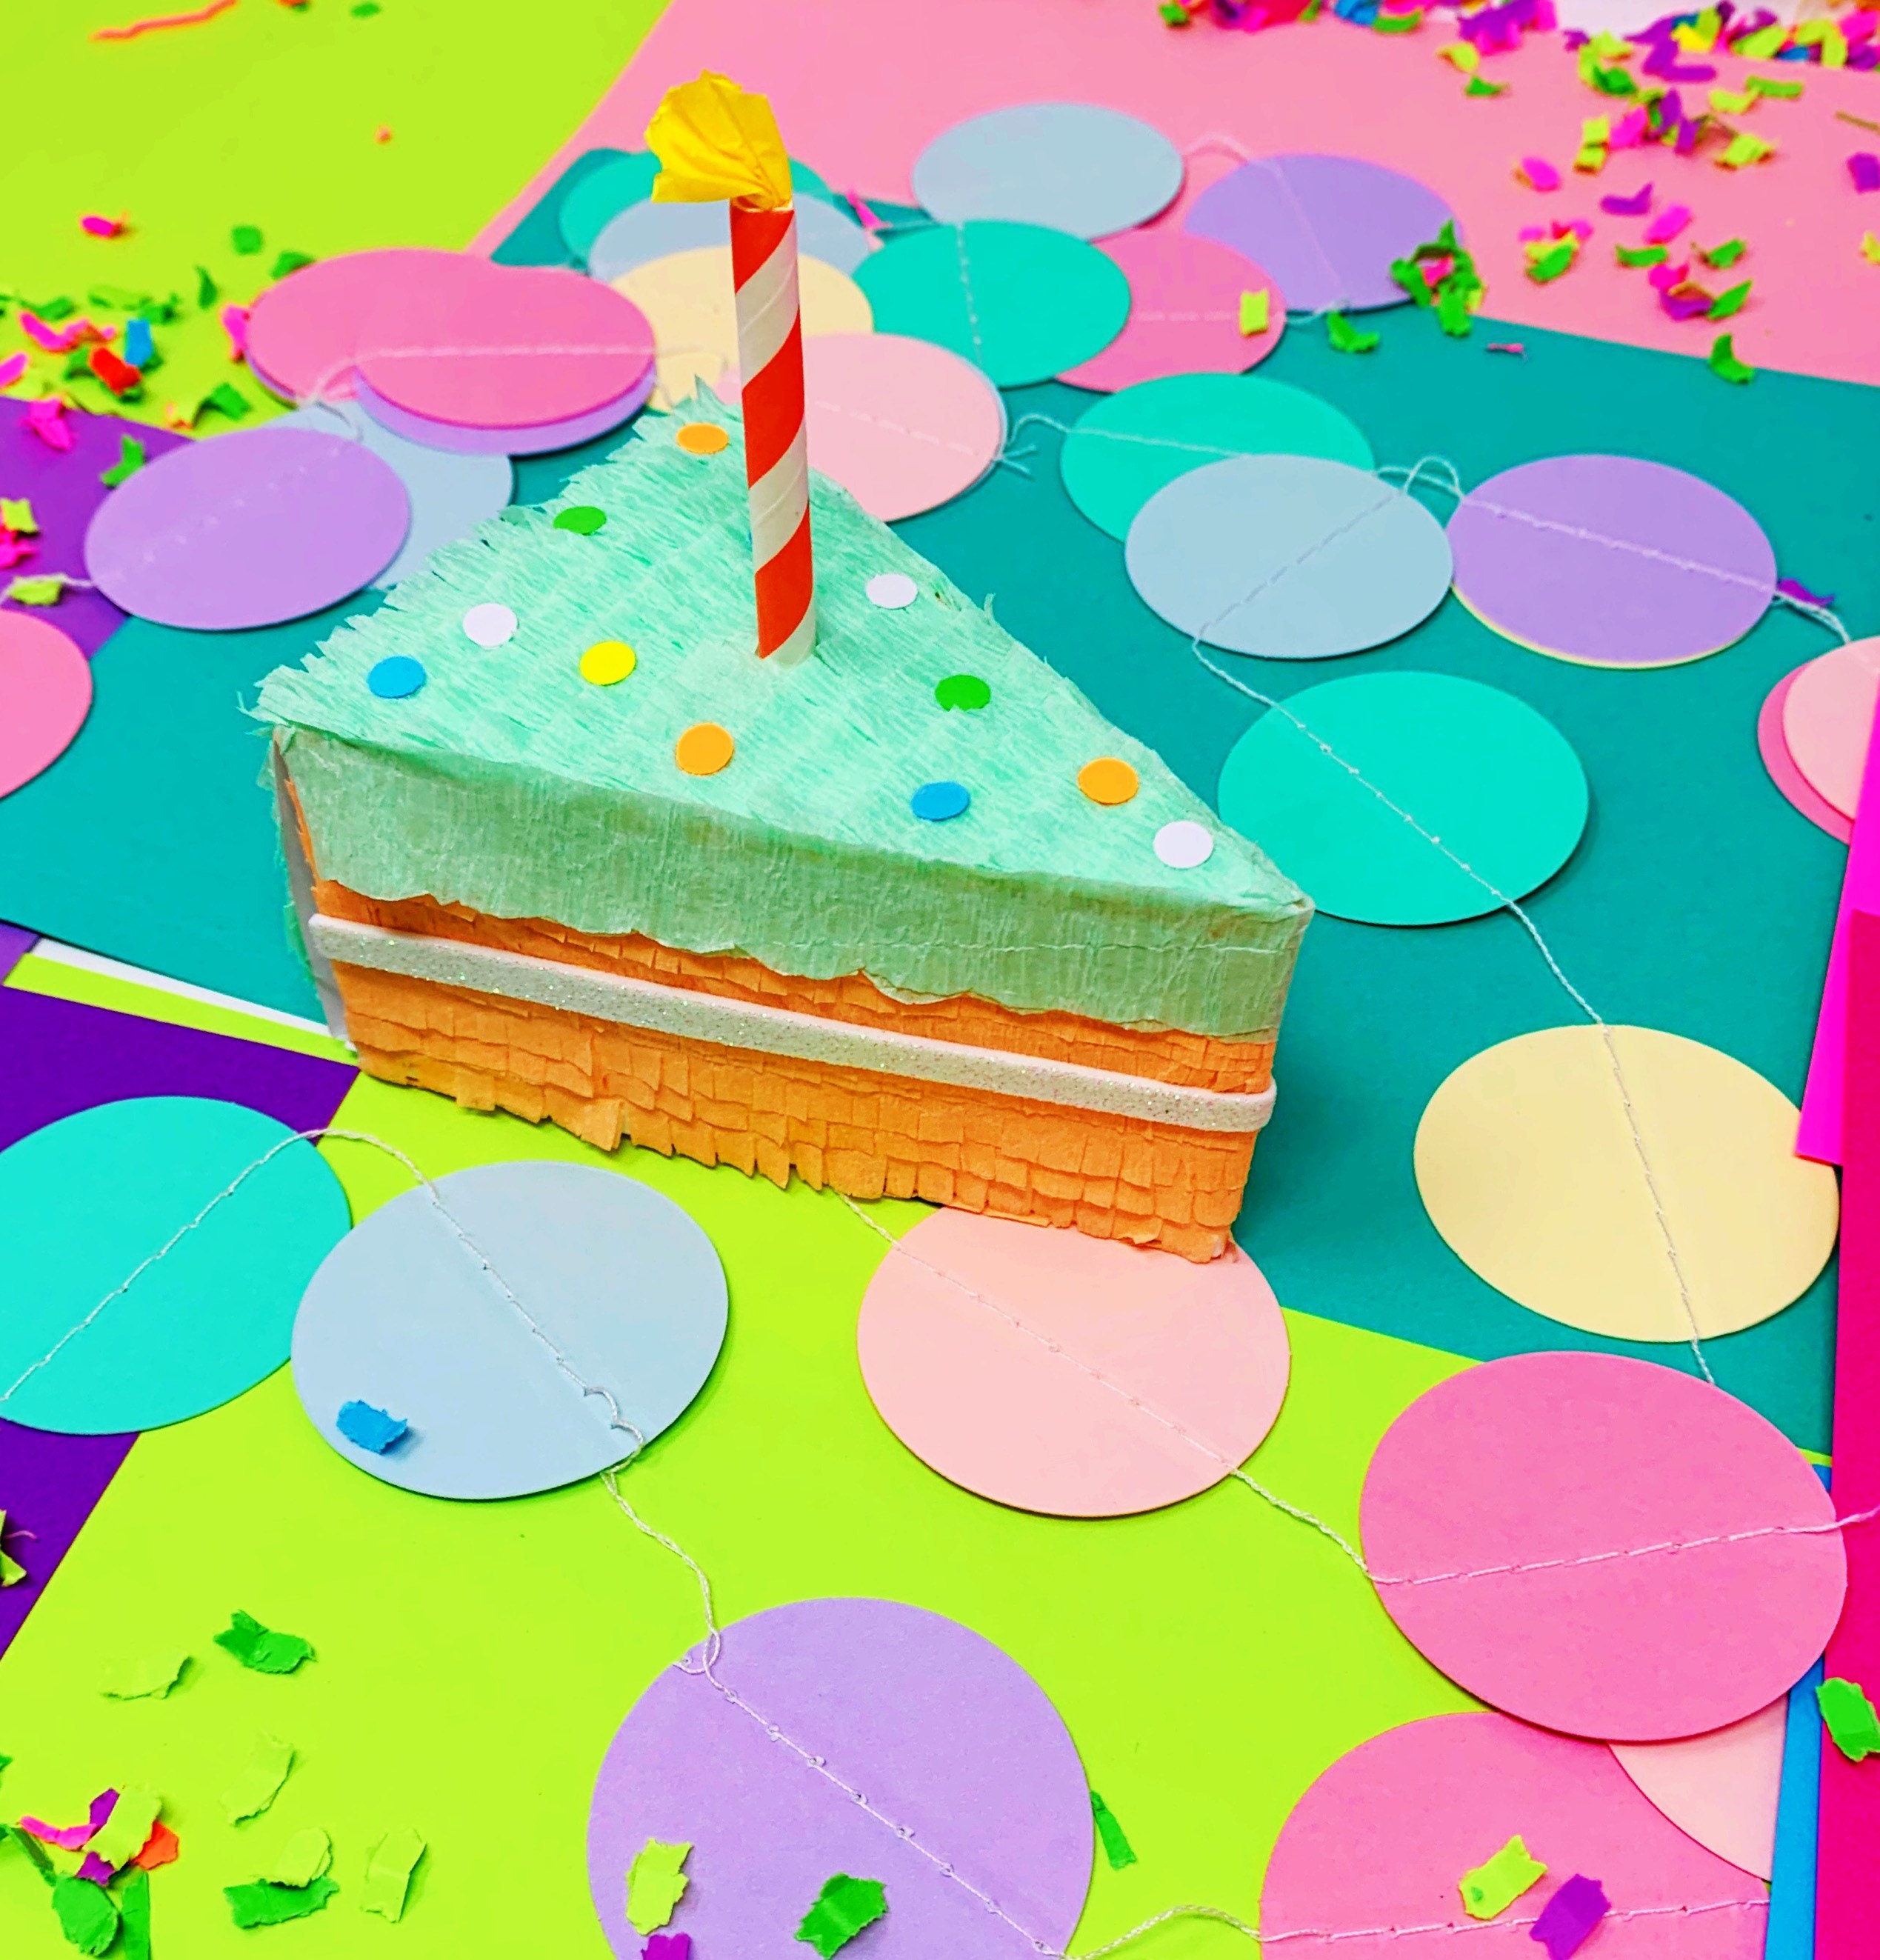 Piñata Pastel de Cumpleaños - Party Art